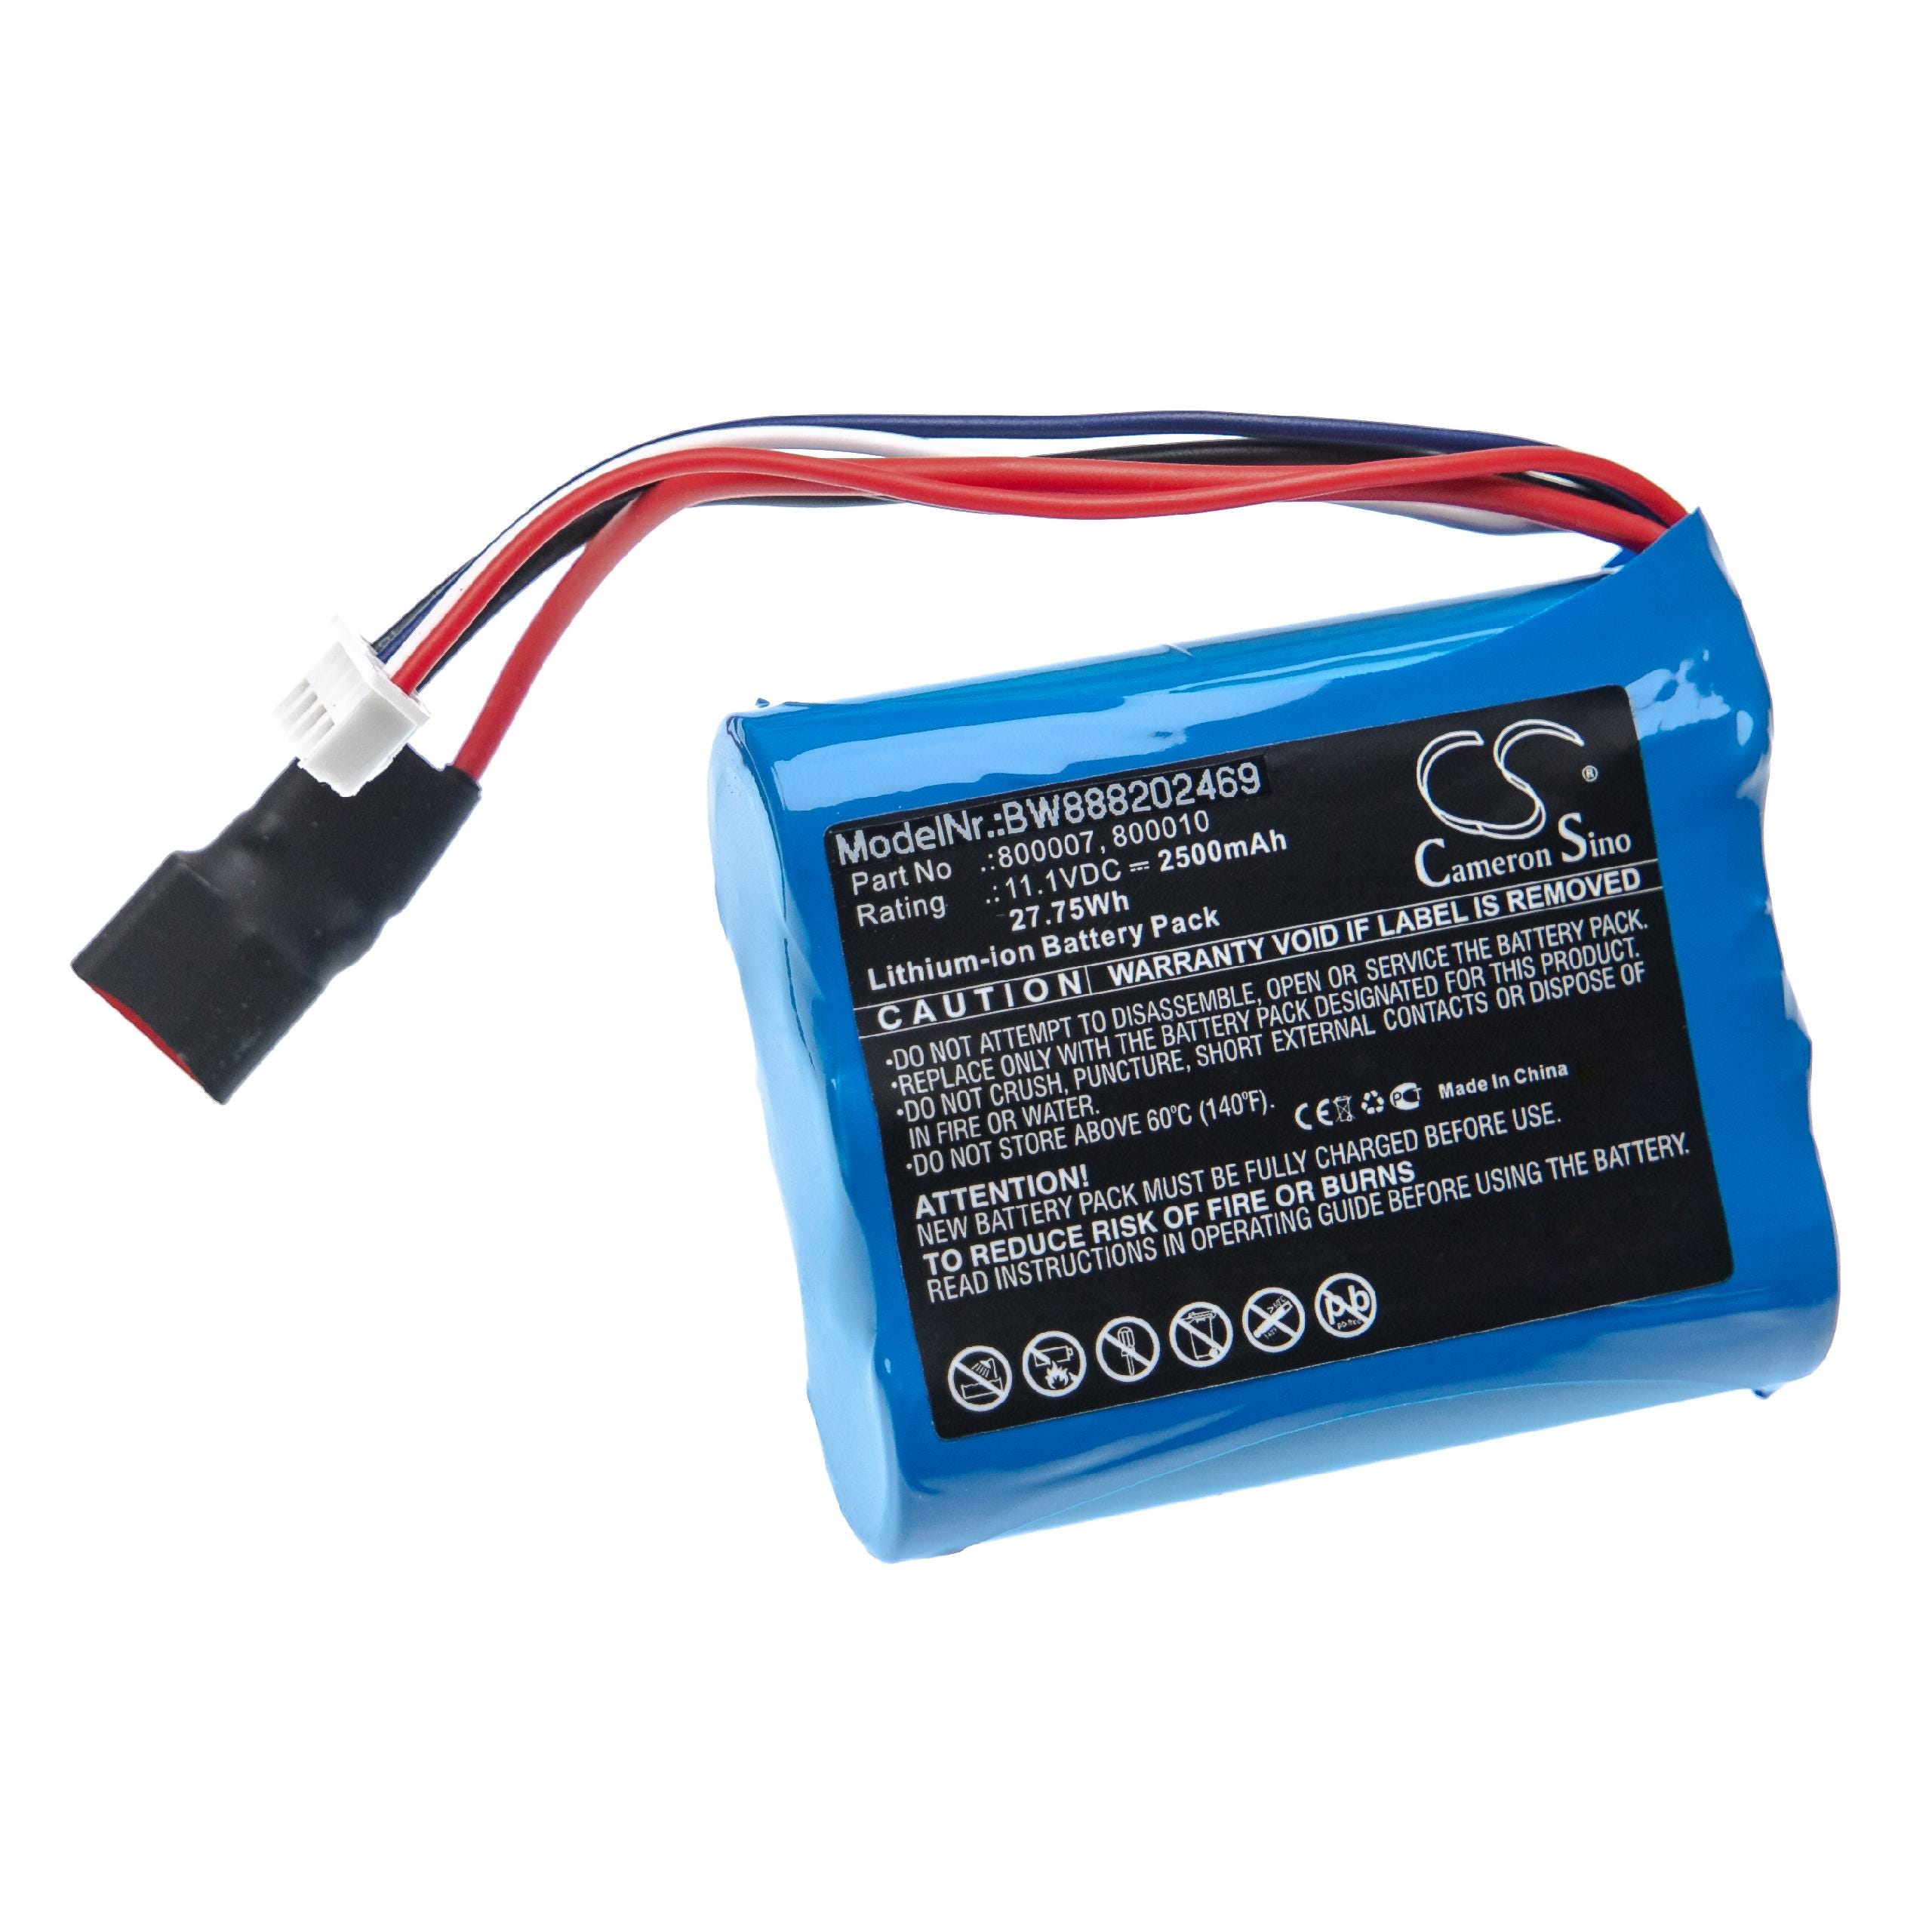 Vhbw Batterie compatible avec Carrera 800007, 800010 modèlisme RC (2500mAh,  11,1V, Li-ion)